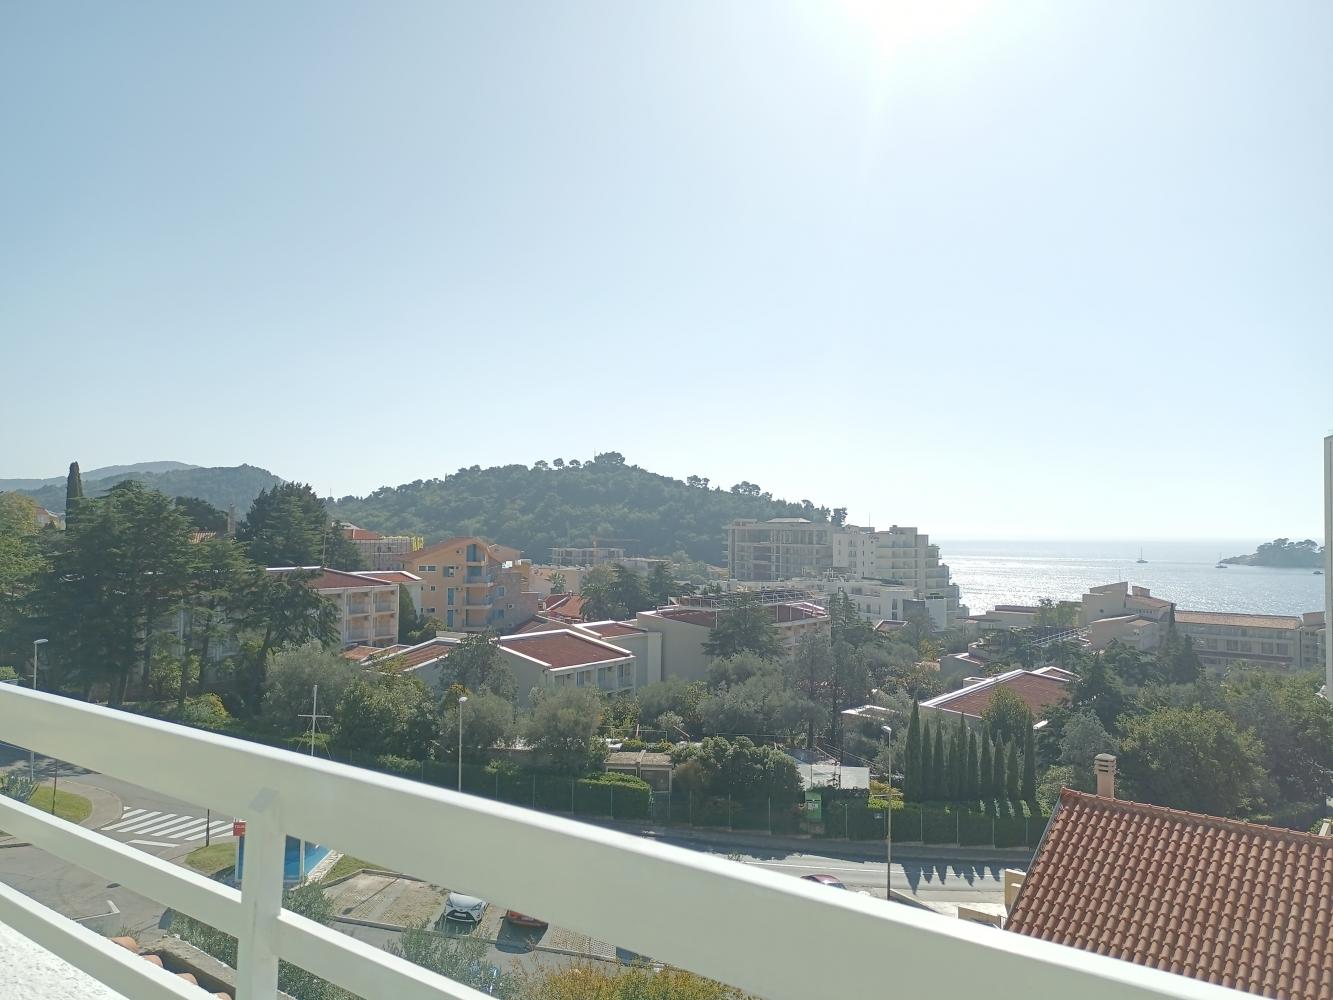 Зашеметяващ апартамент с изглед към морето с една спалня в Петровац само на 10 минути до морето